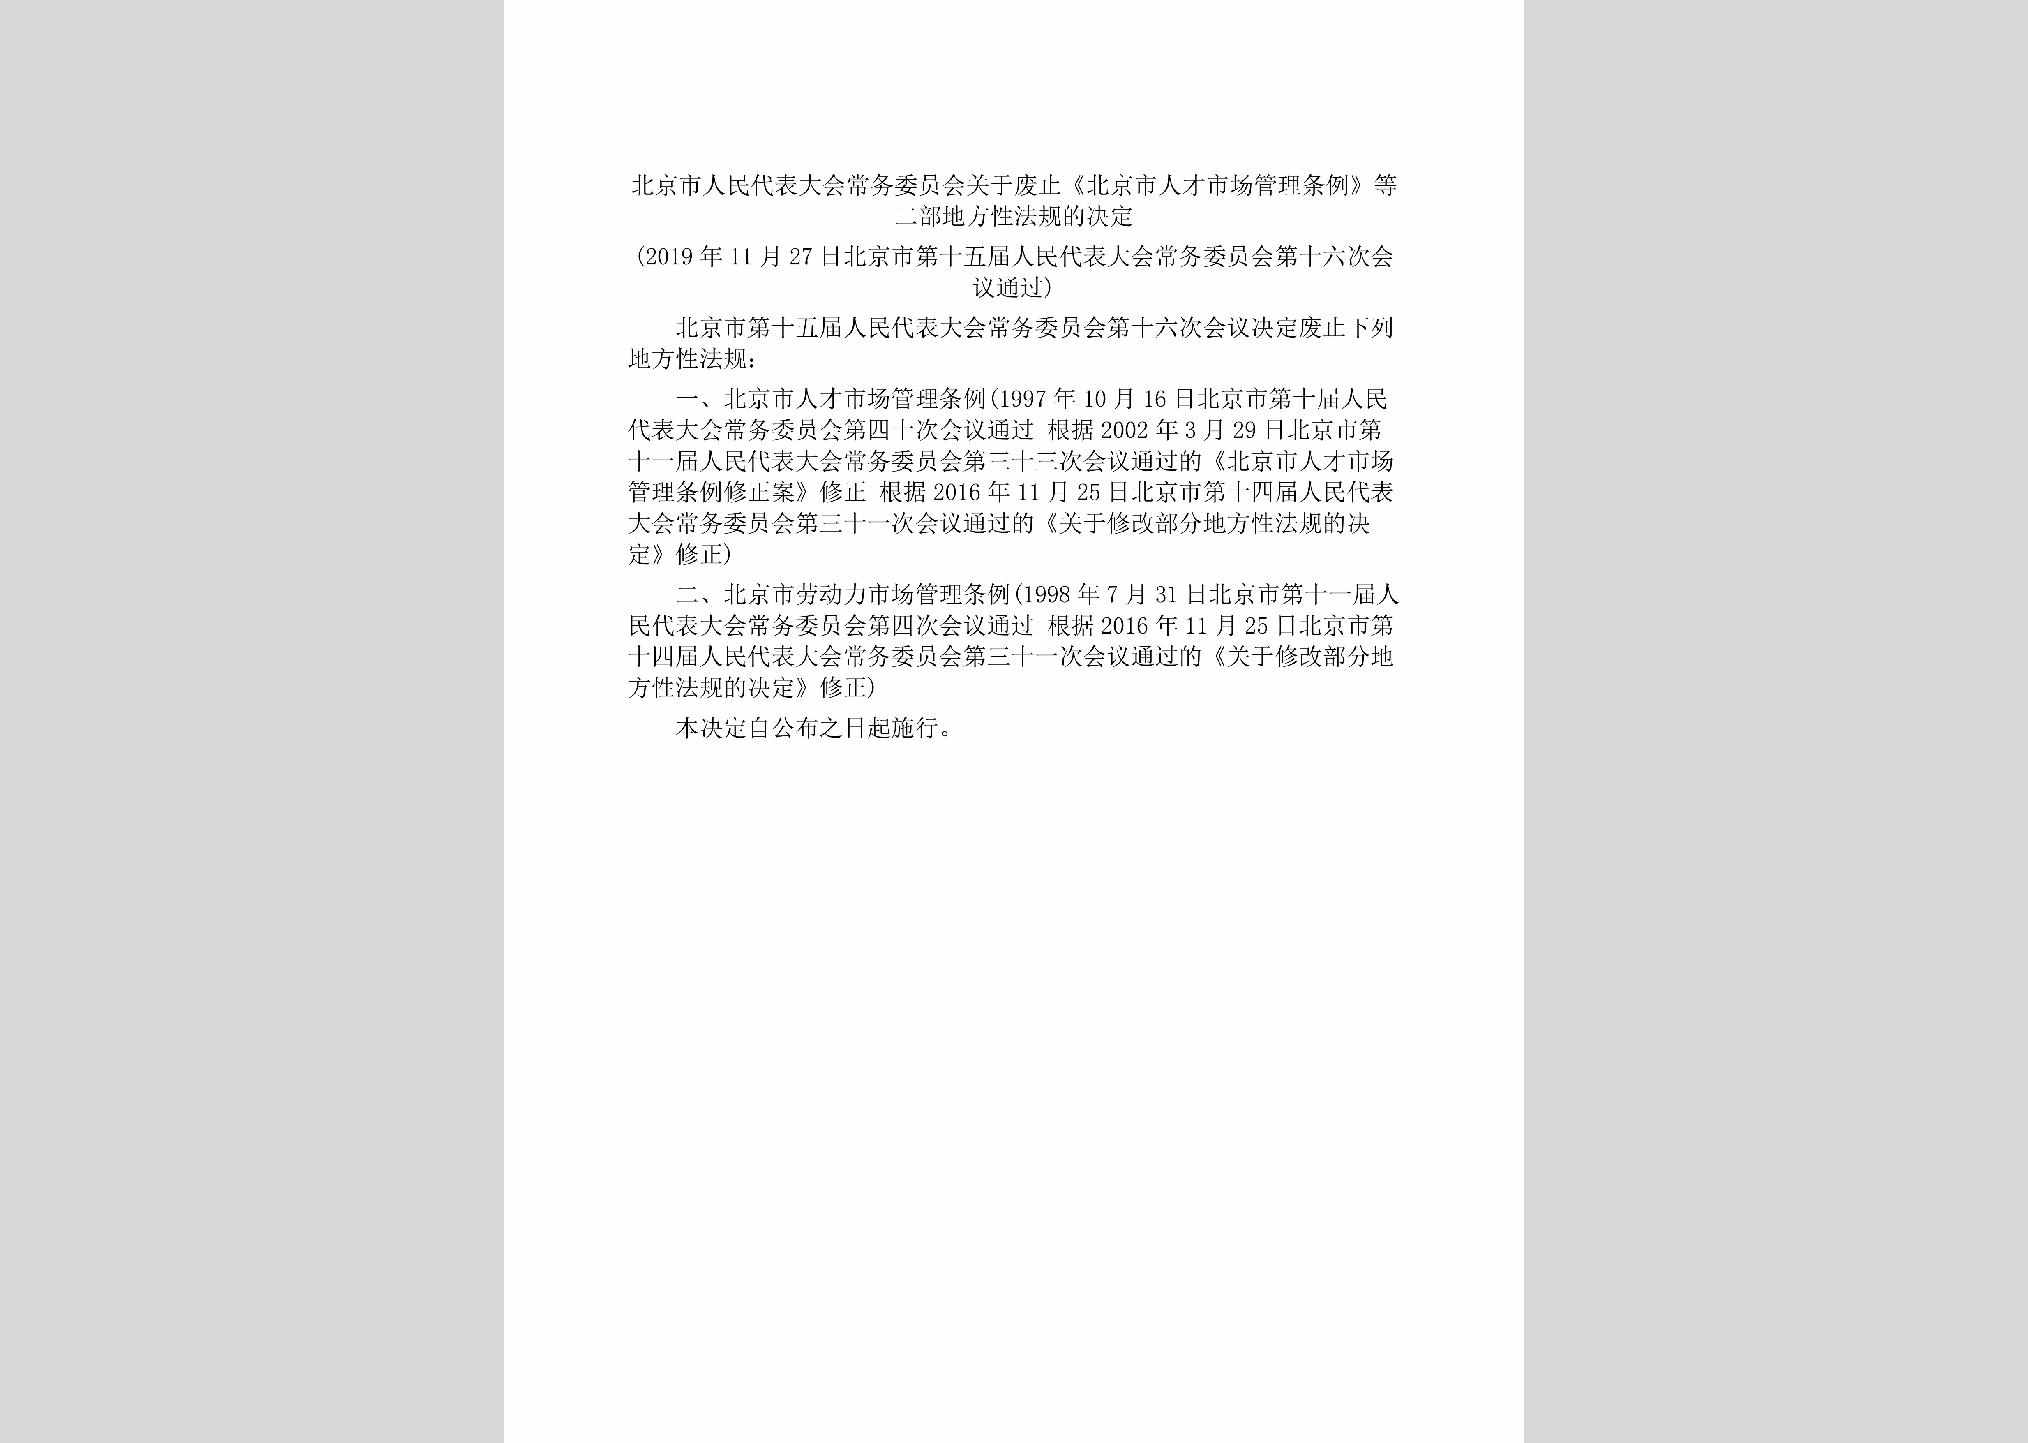 BJ-RCSCGLTL-2019：北京市人民代表大会常务委员会关于废止《北京市人才市场管理条例》等二部地方性法规的决定